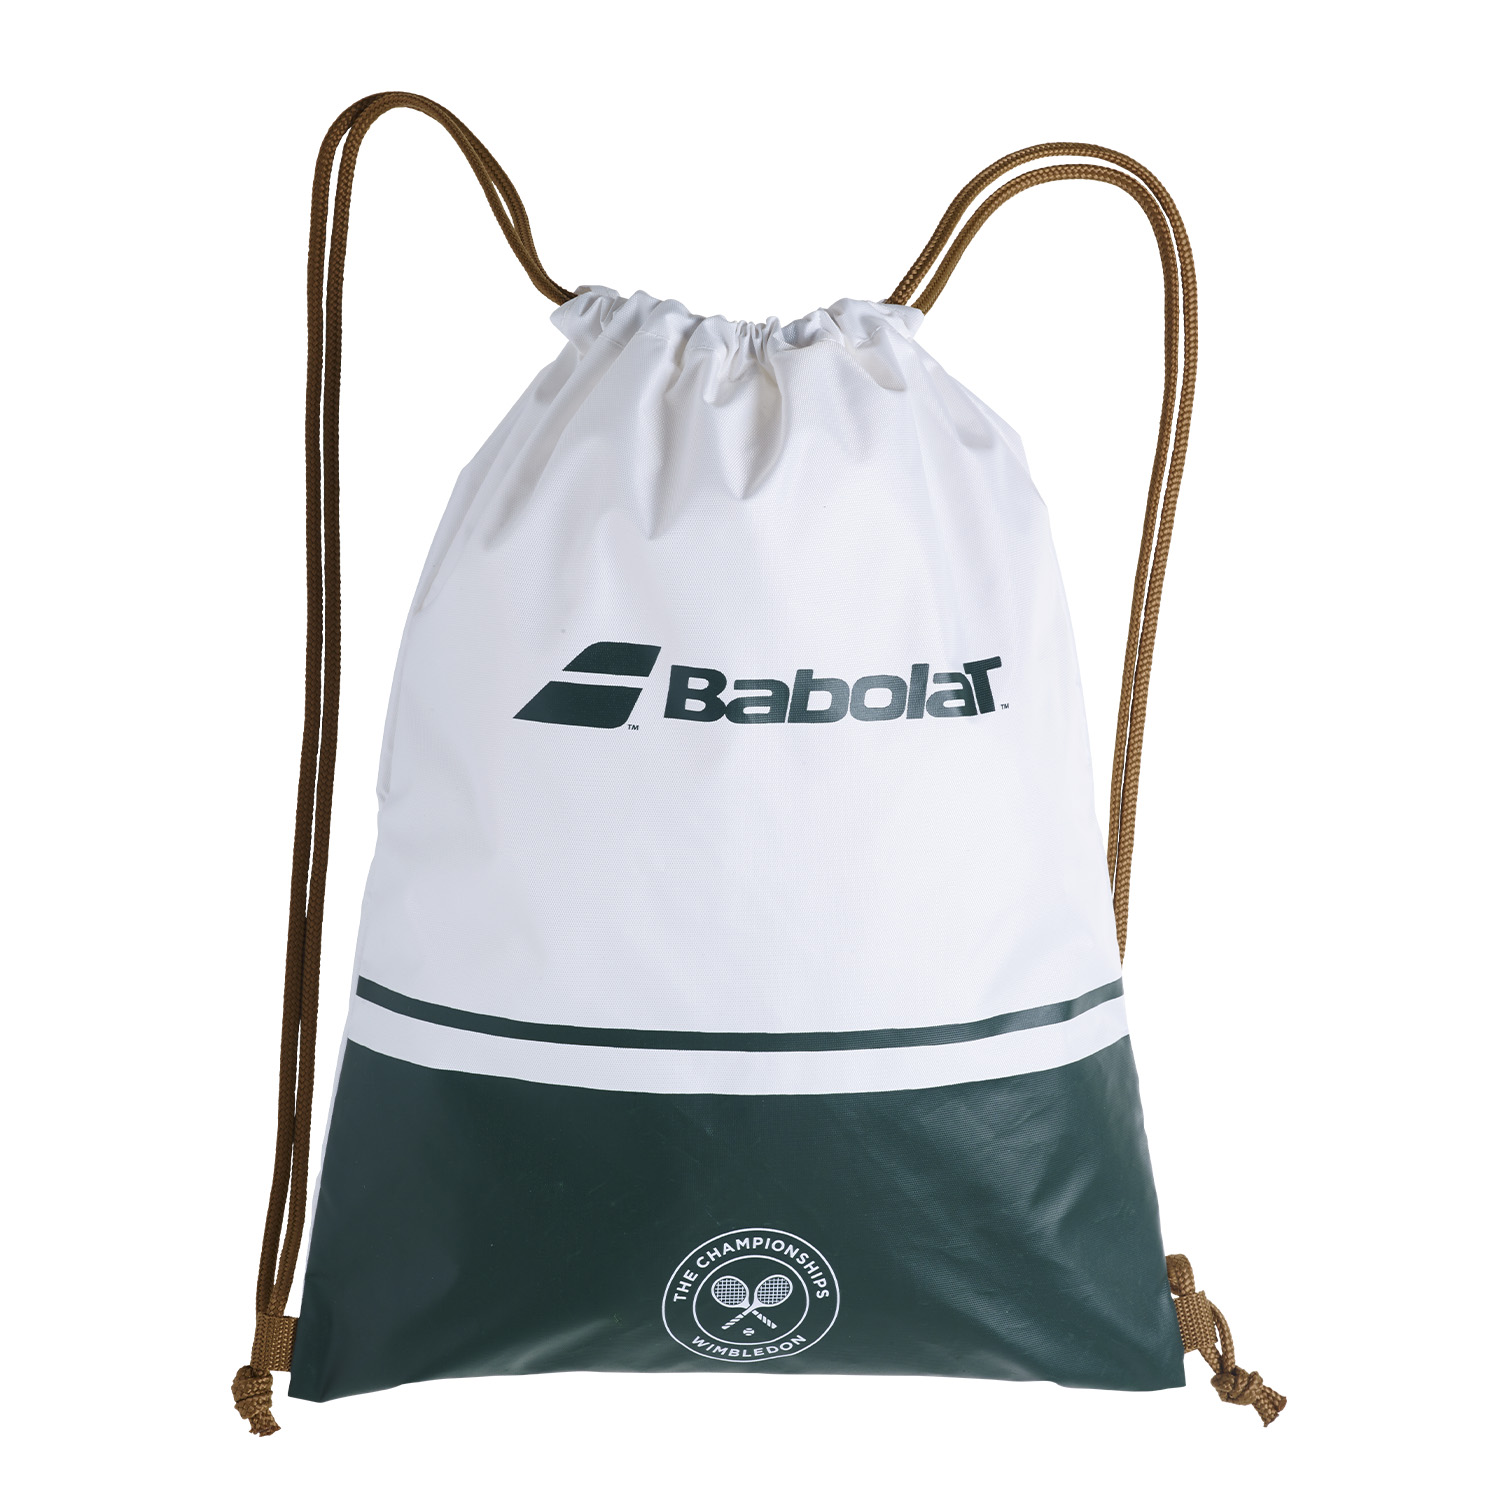 Babolat Gym Wimbledon Sacca - White/Green